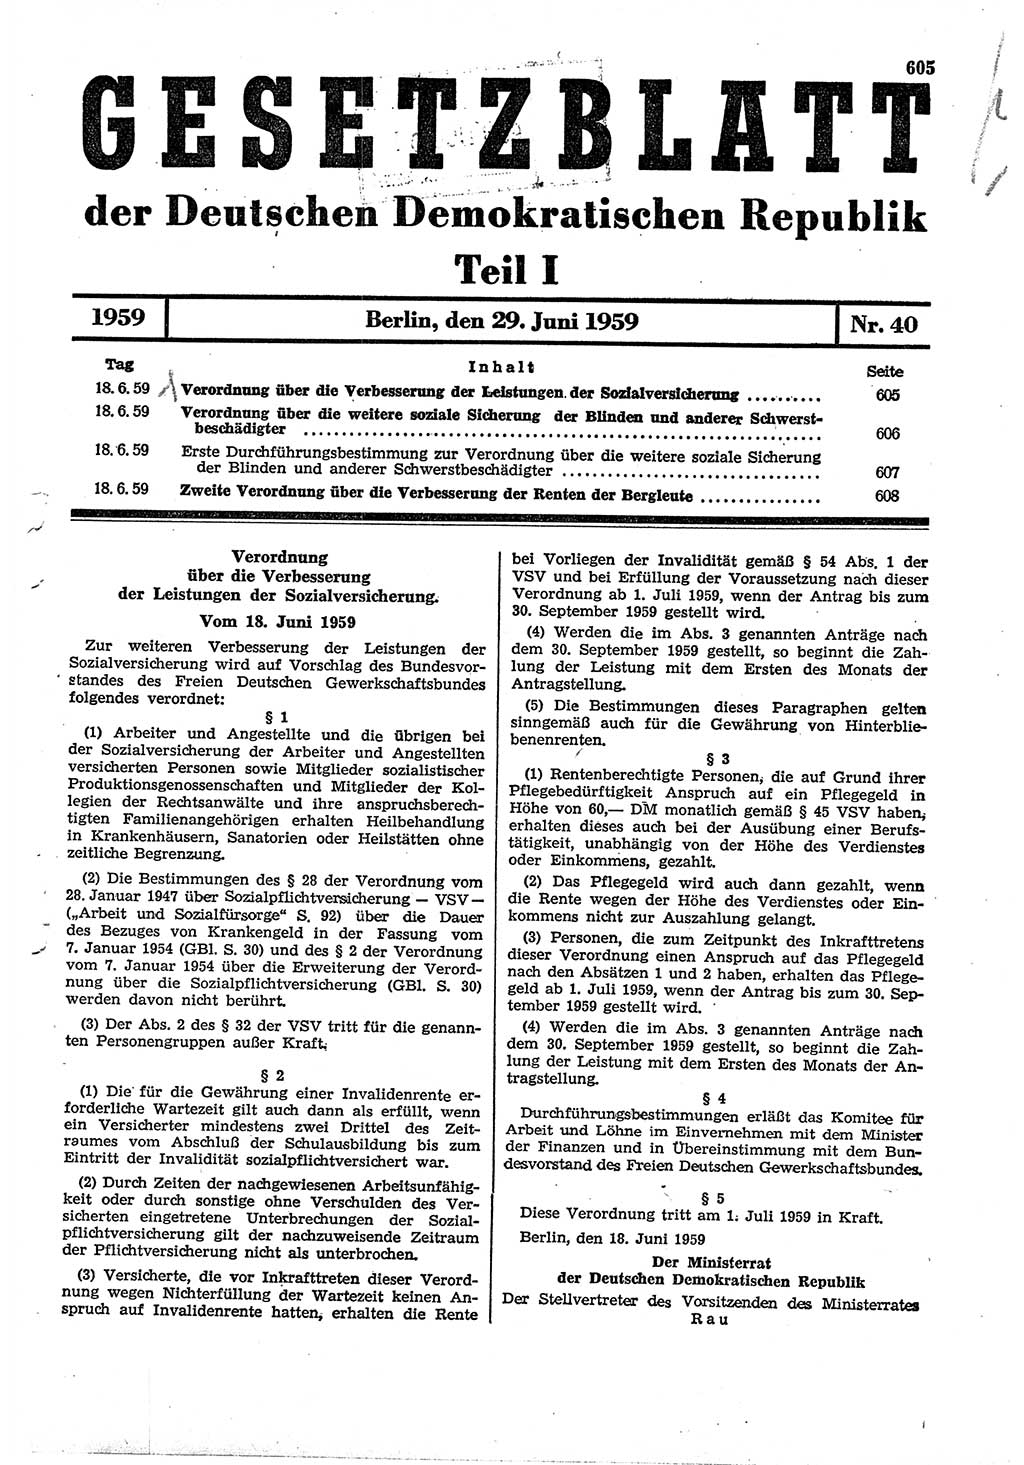 Gesetzblatt (GBl.) der Deutschen Demokratischen Republik (DDR) Teil Ⅰ 1959, Seite 605 (GBl. DDR Ⅰ 1959, S. 605)